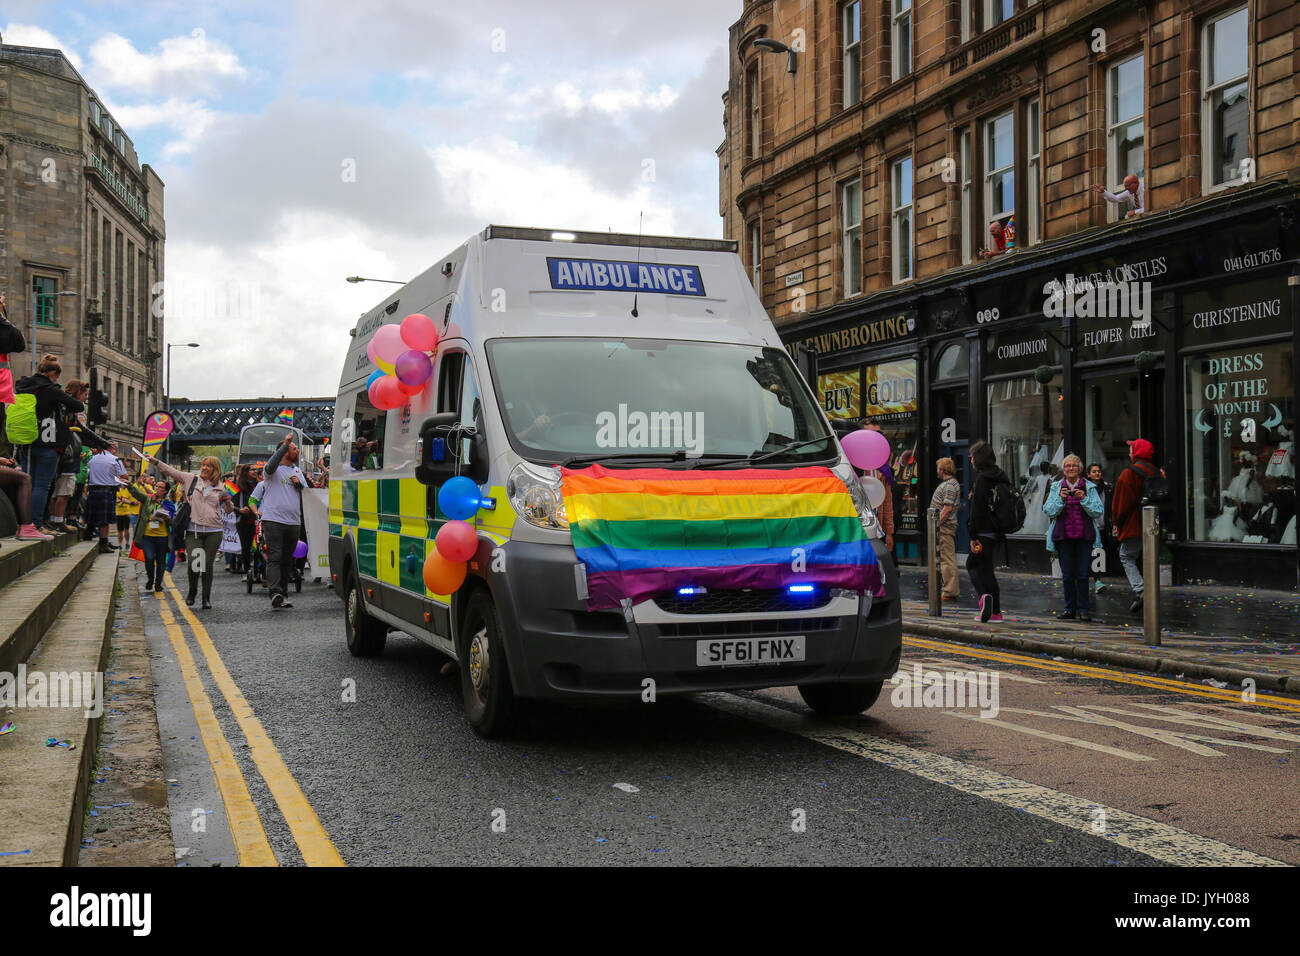 Tausende auf die Straße, in der Gay Pride Parade durch das Zentrum von Glasgow. Hunderte von Unternehmen und gesellschaftlichen Gruppen zeigen ihre Unterstützung für LGBT-Rechte bei der Veranstaltung. Stockfoto